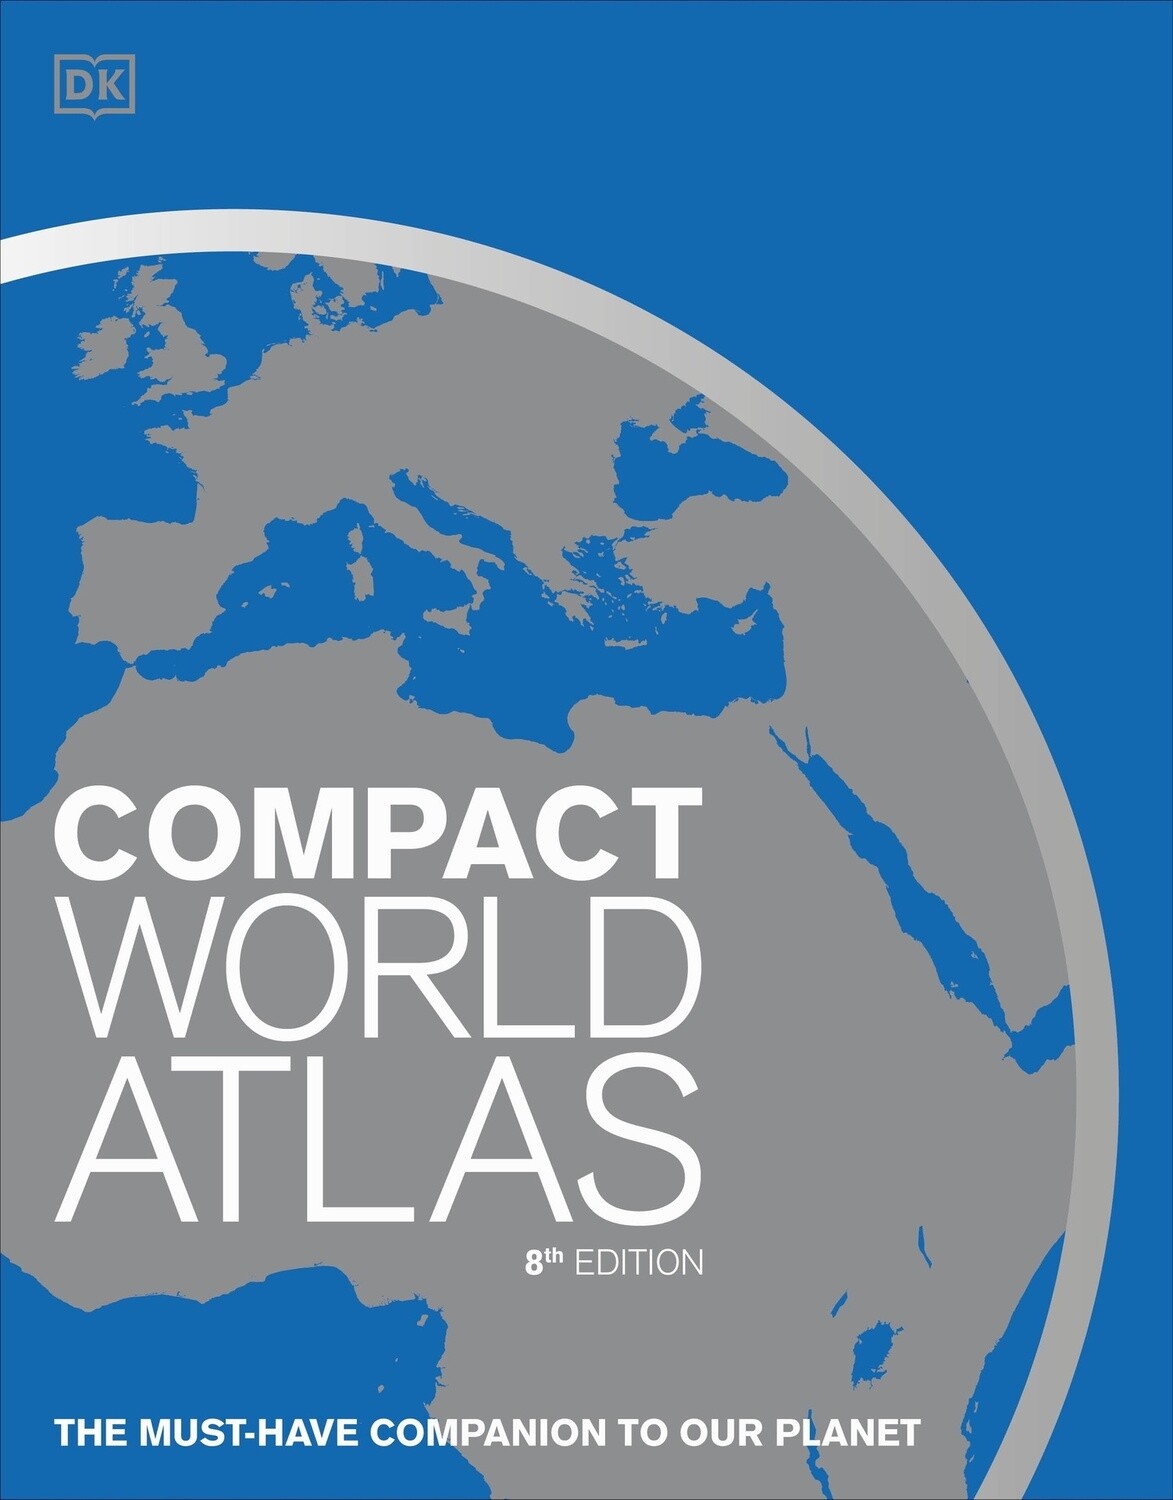 DK&#39;s Compact World Atlas